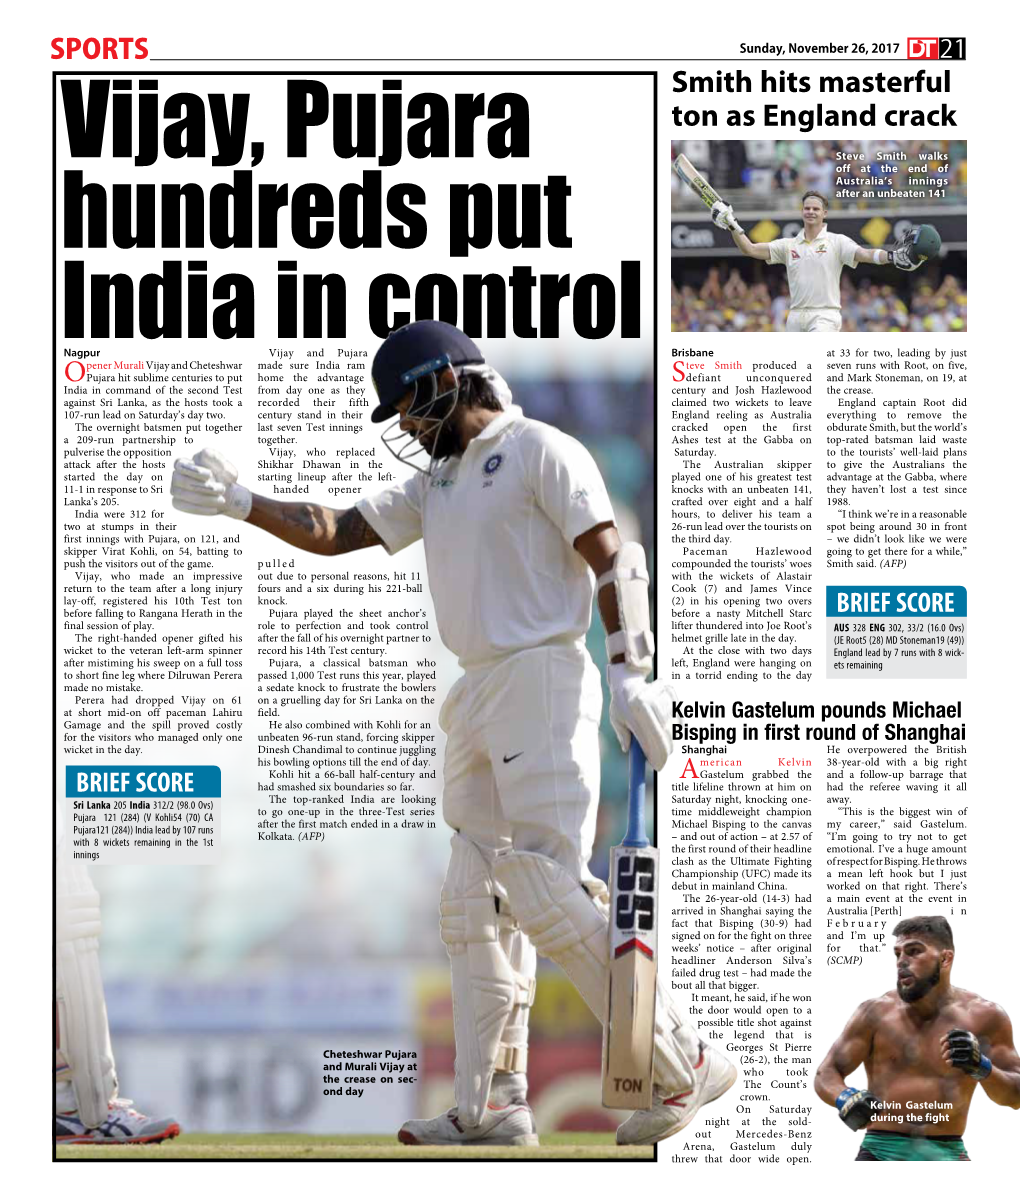 Vijay, Pujara Hundreds Put India in Control